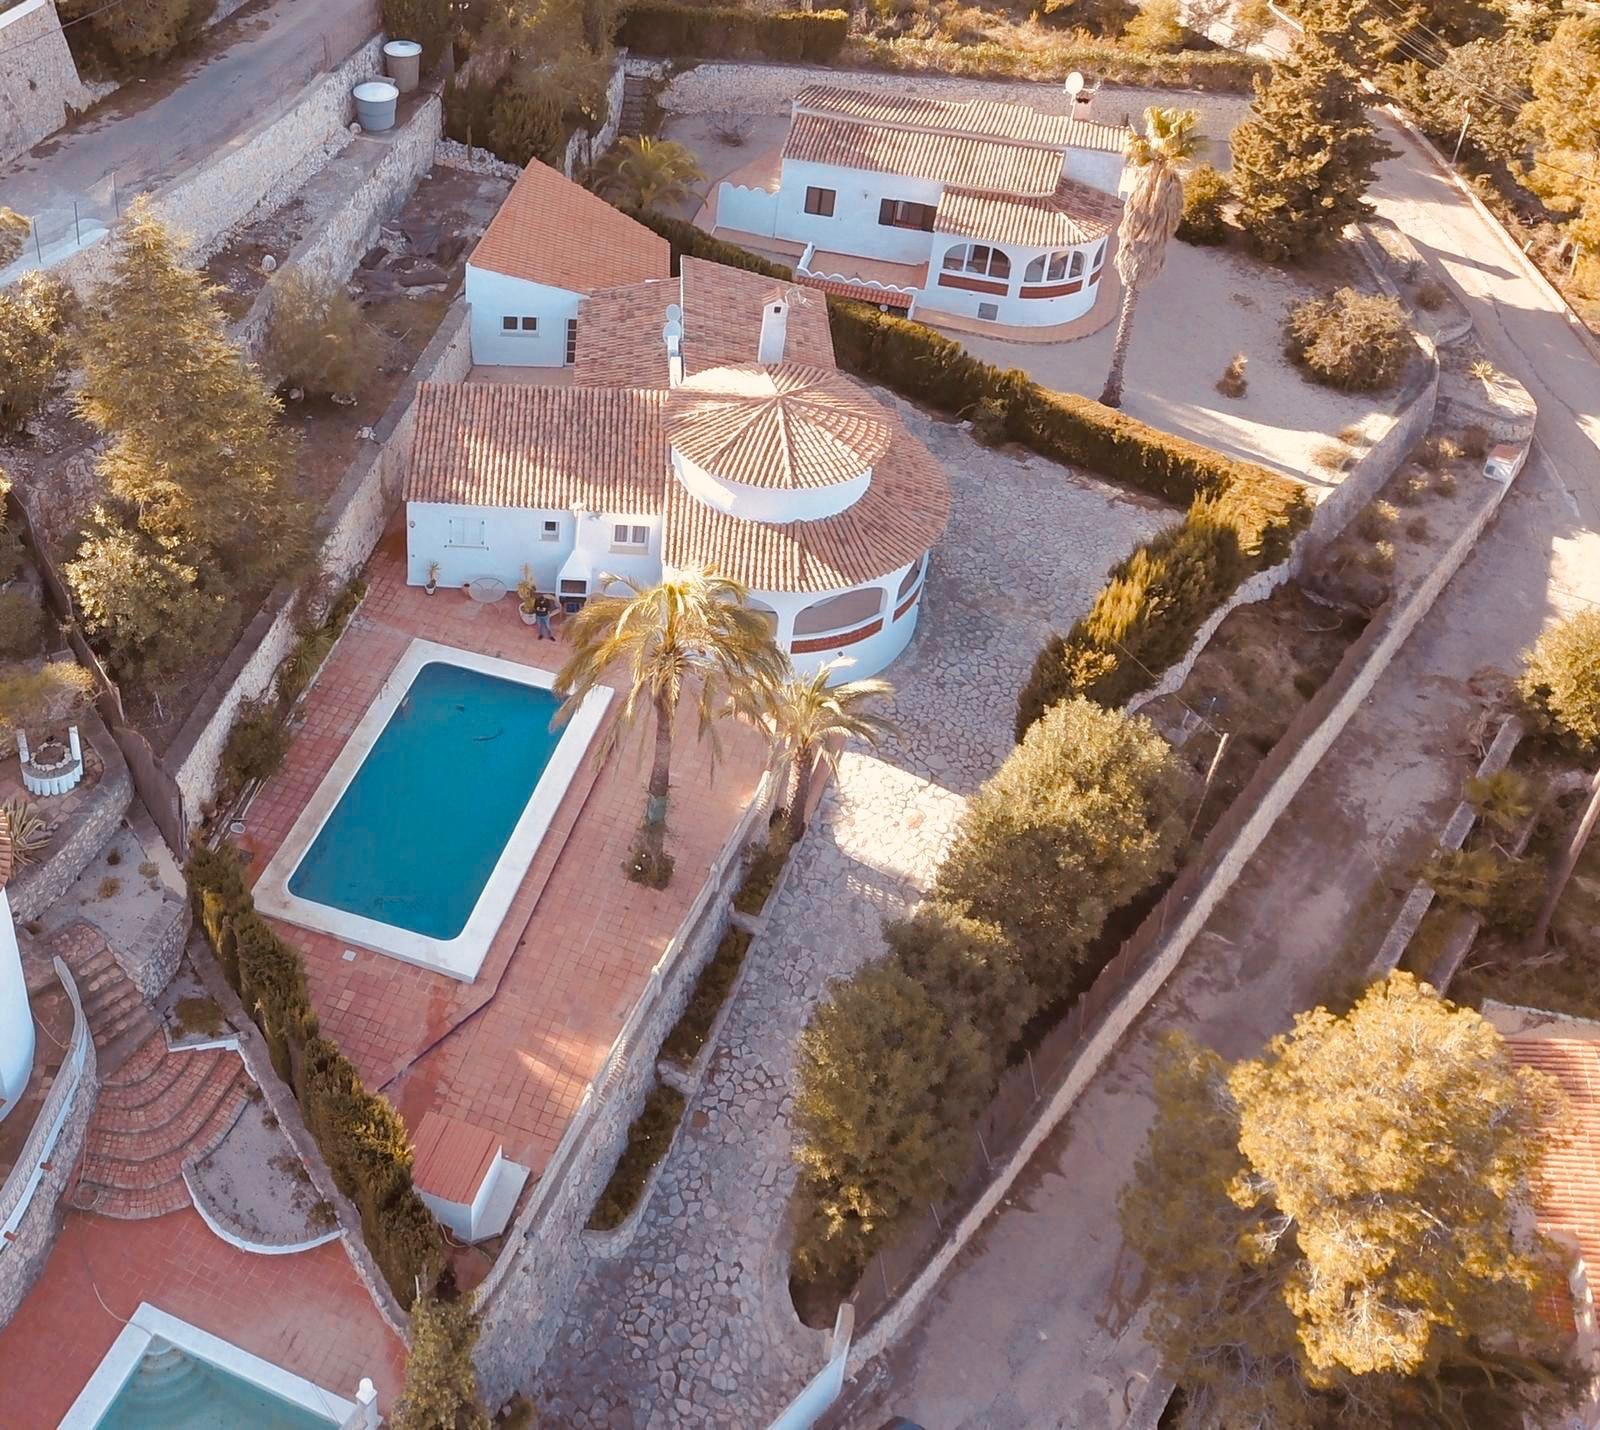 Villa confortable avec vue sur la mer près de Oliva